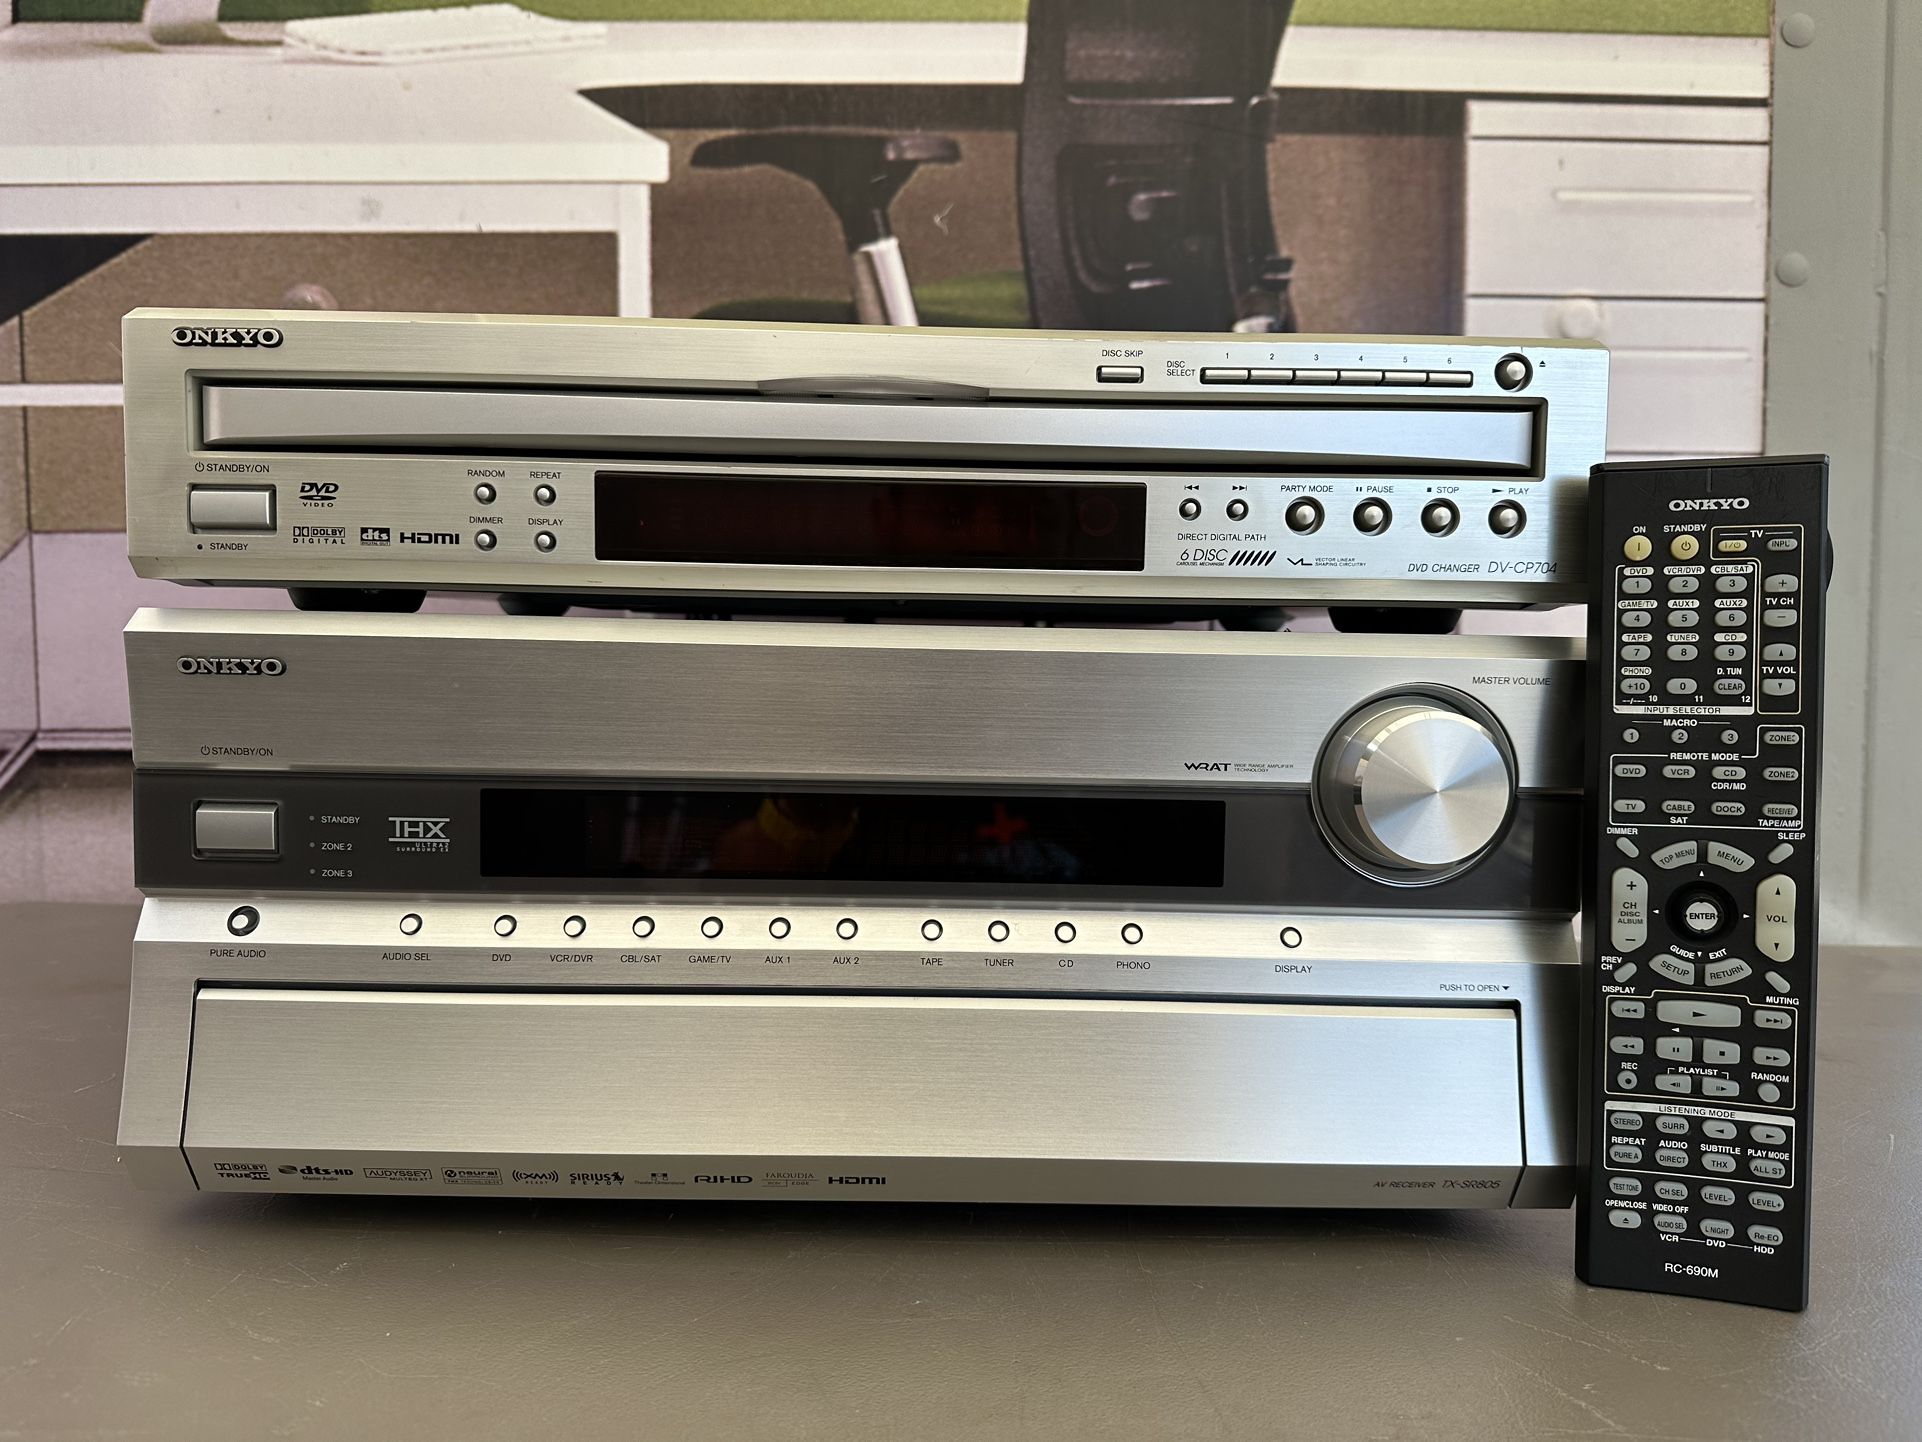 Onkyo TX-SR805 THX Certified 7.1 Surround Receiver With DV-CP704 DVD Changer